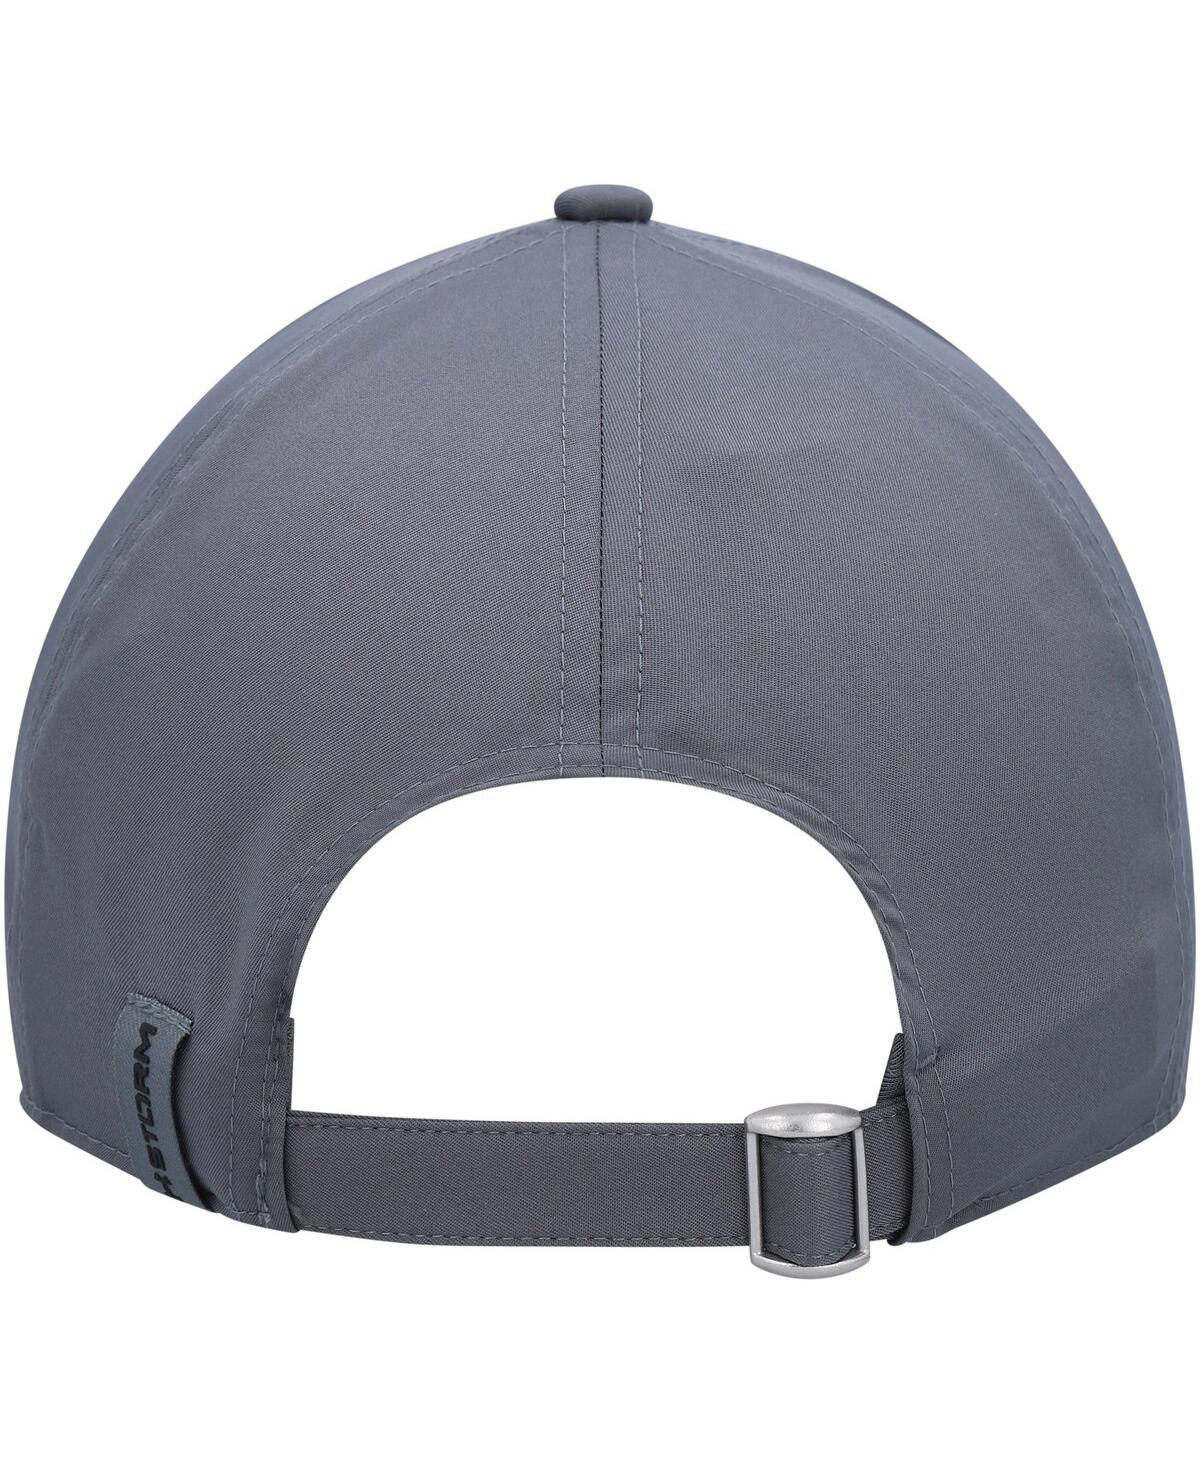 Shop Under Armour Men's  Graphite Blitzing Performance Adjustable Hat